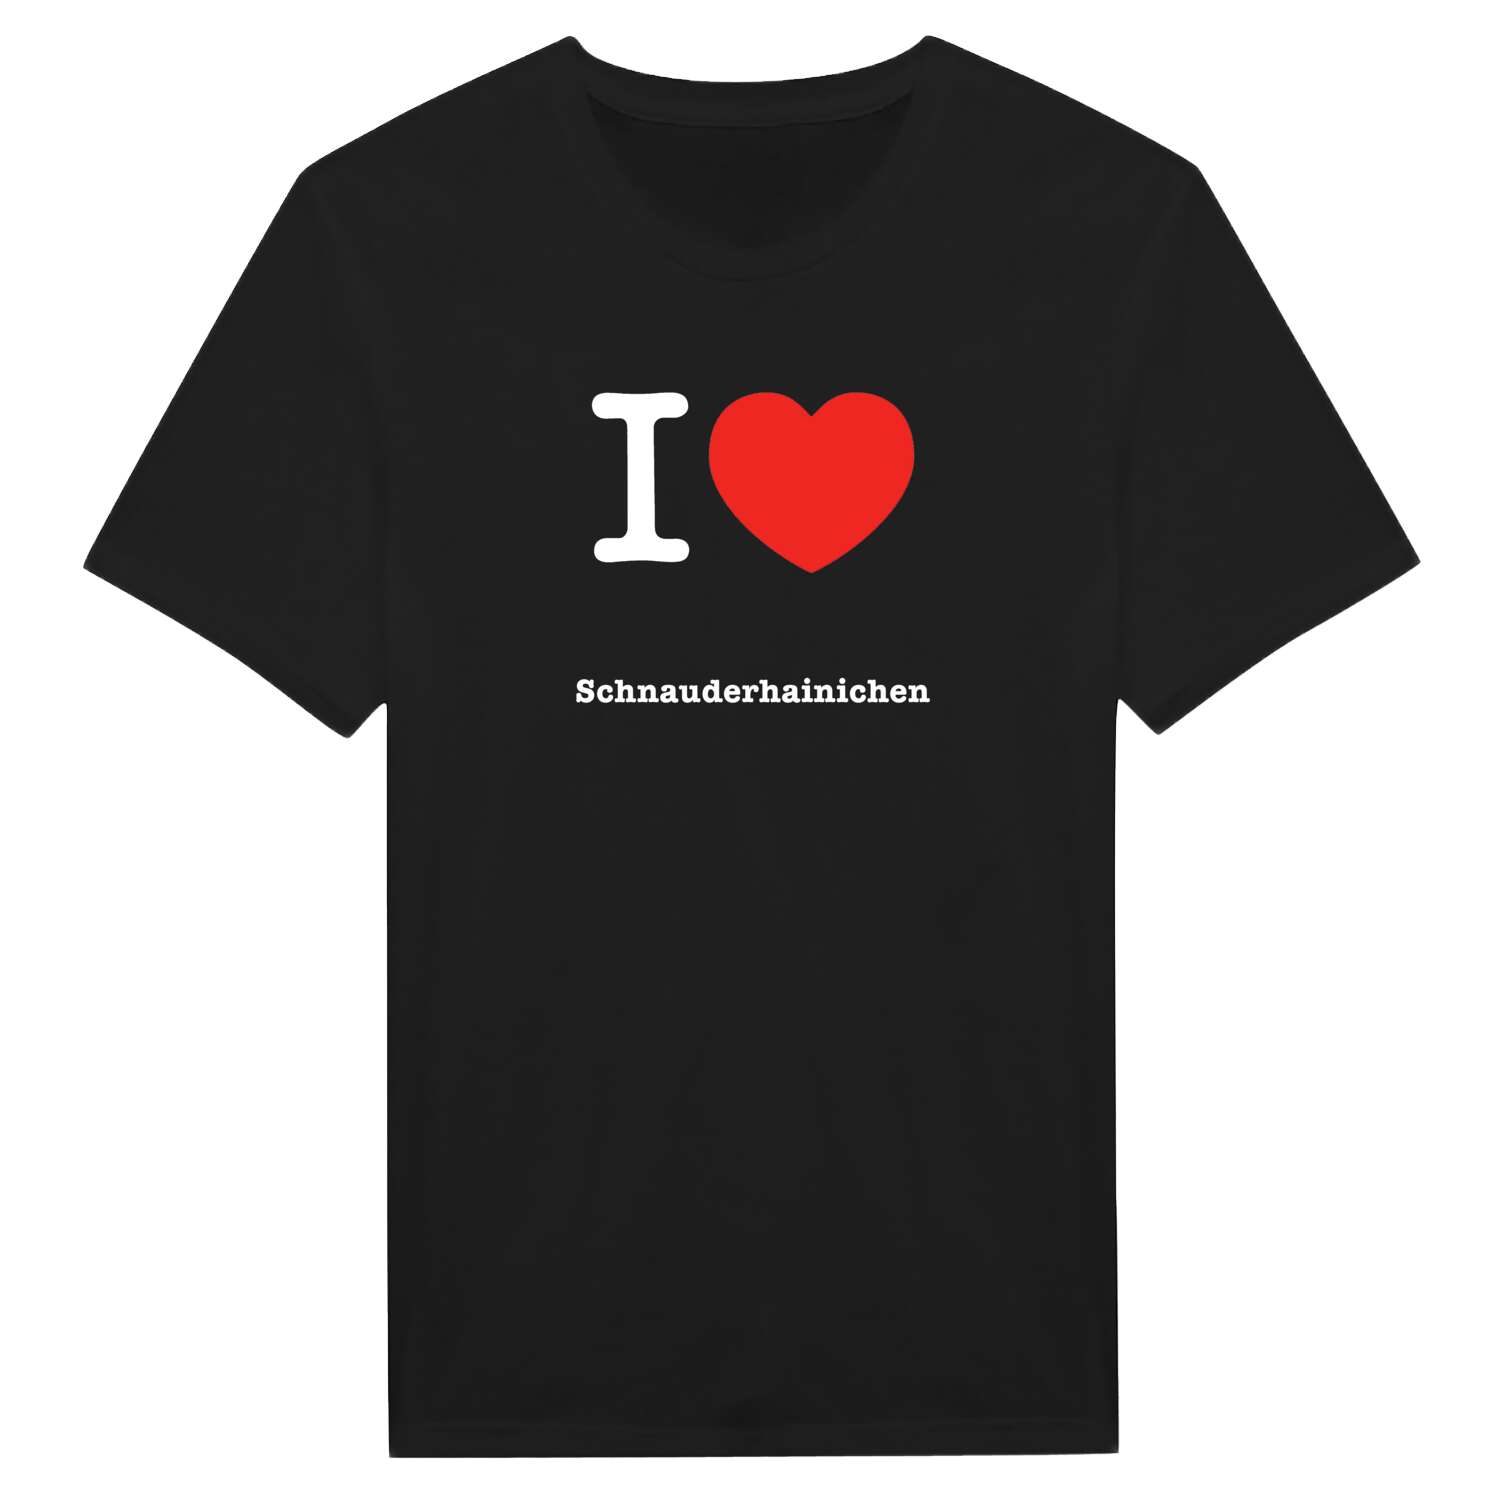 Schnauderhainichen T-Shirt »I love«